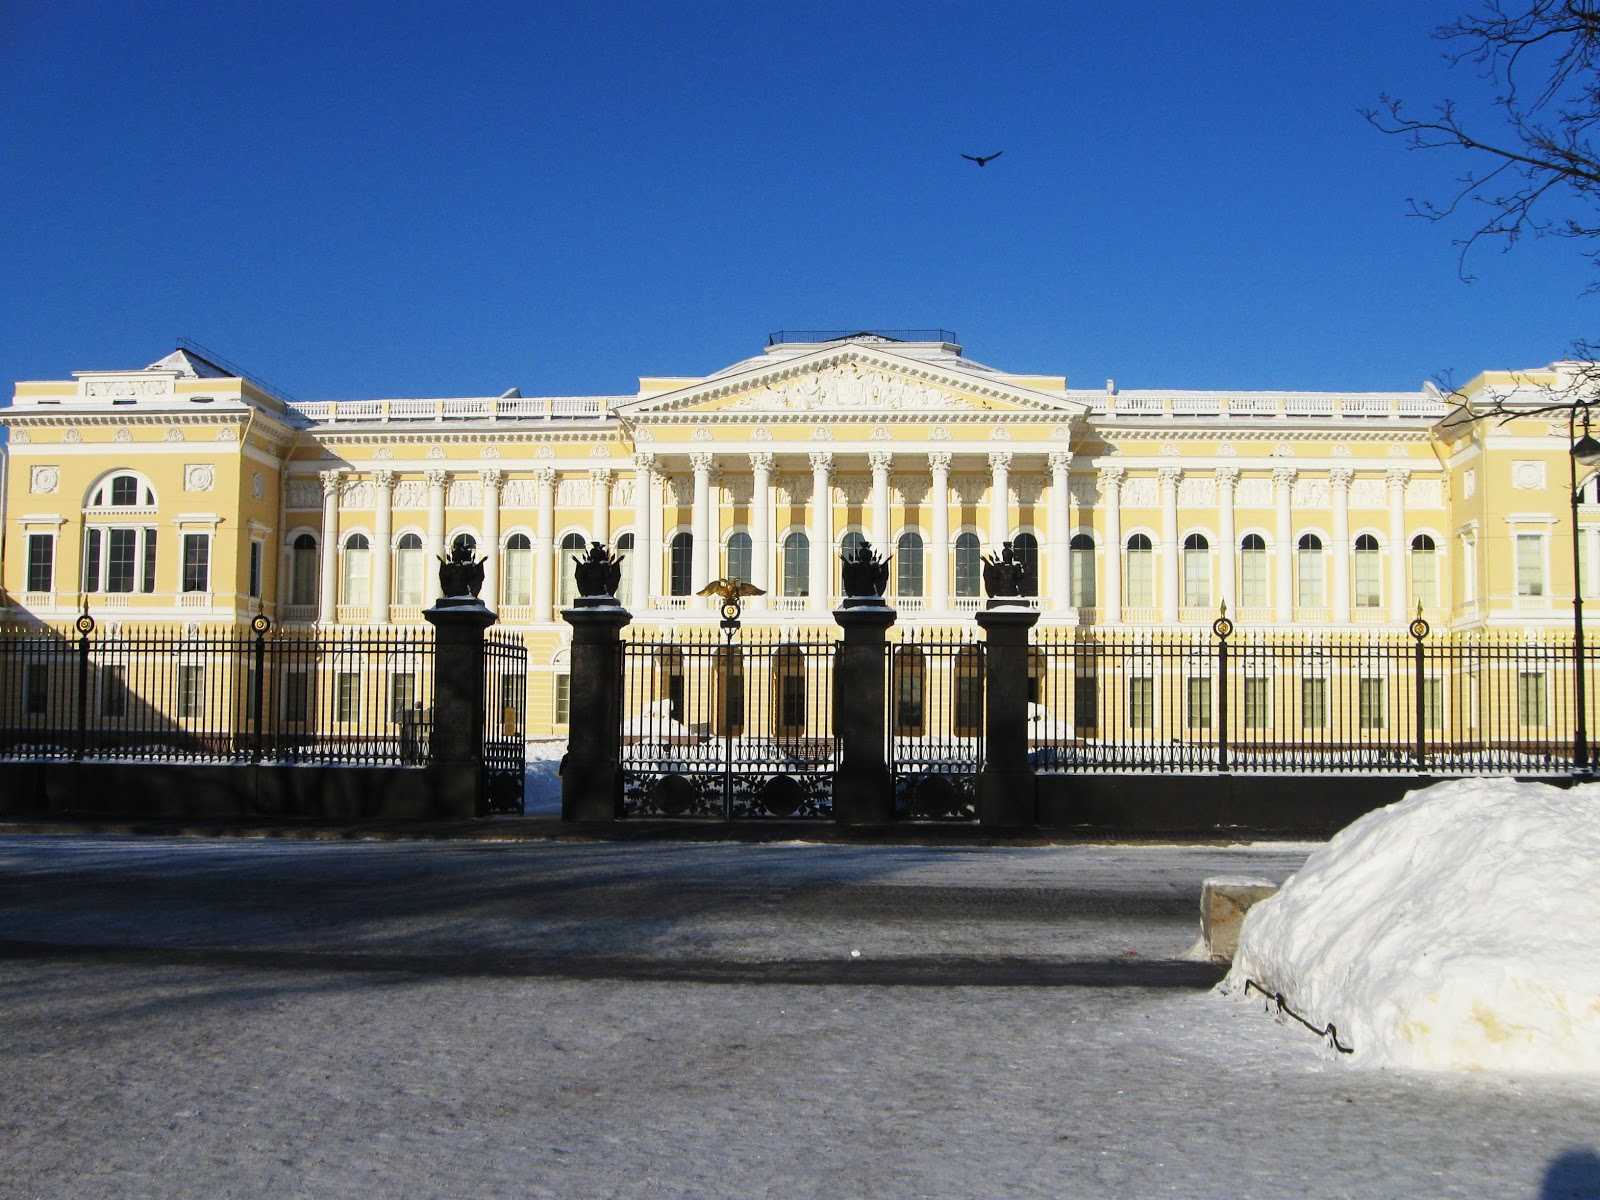 Михайловский замок в санкт-петербурге – дворец императора павла i